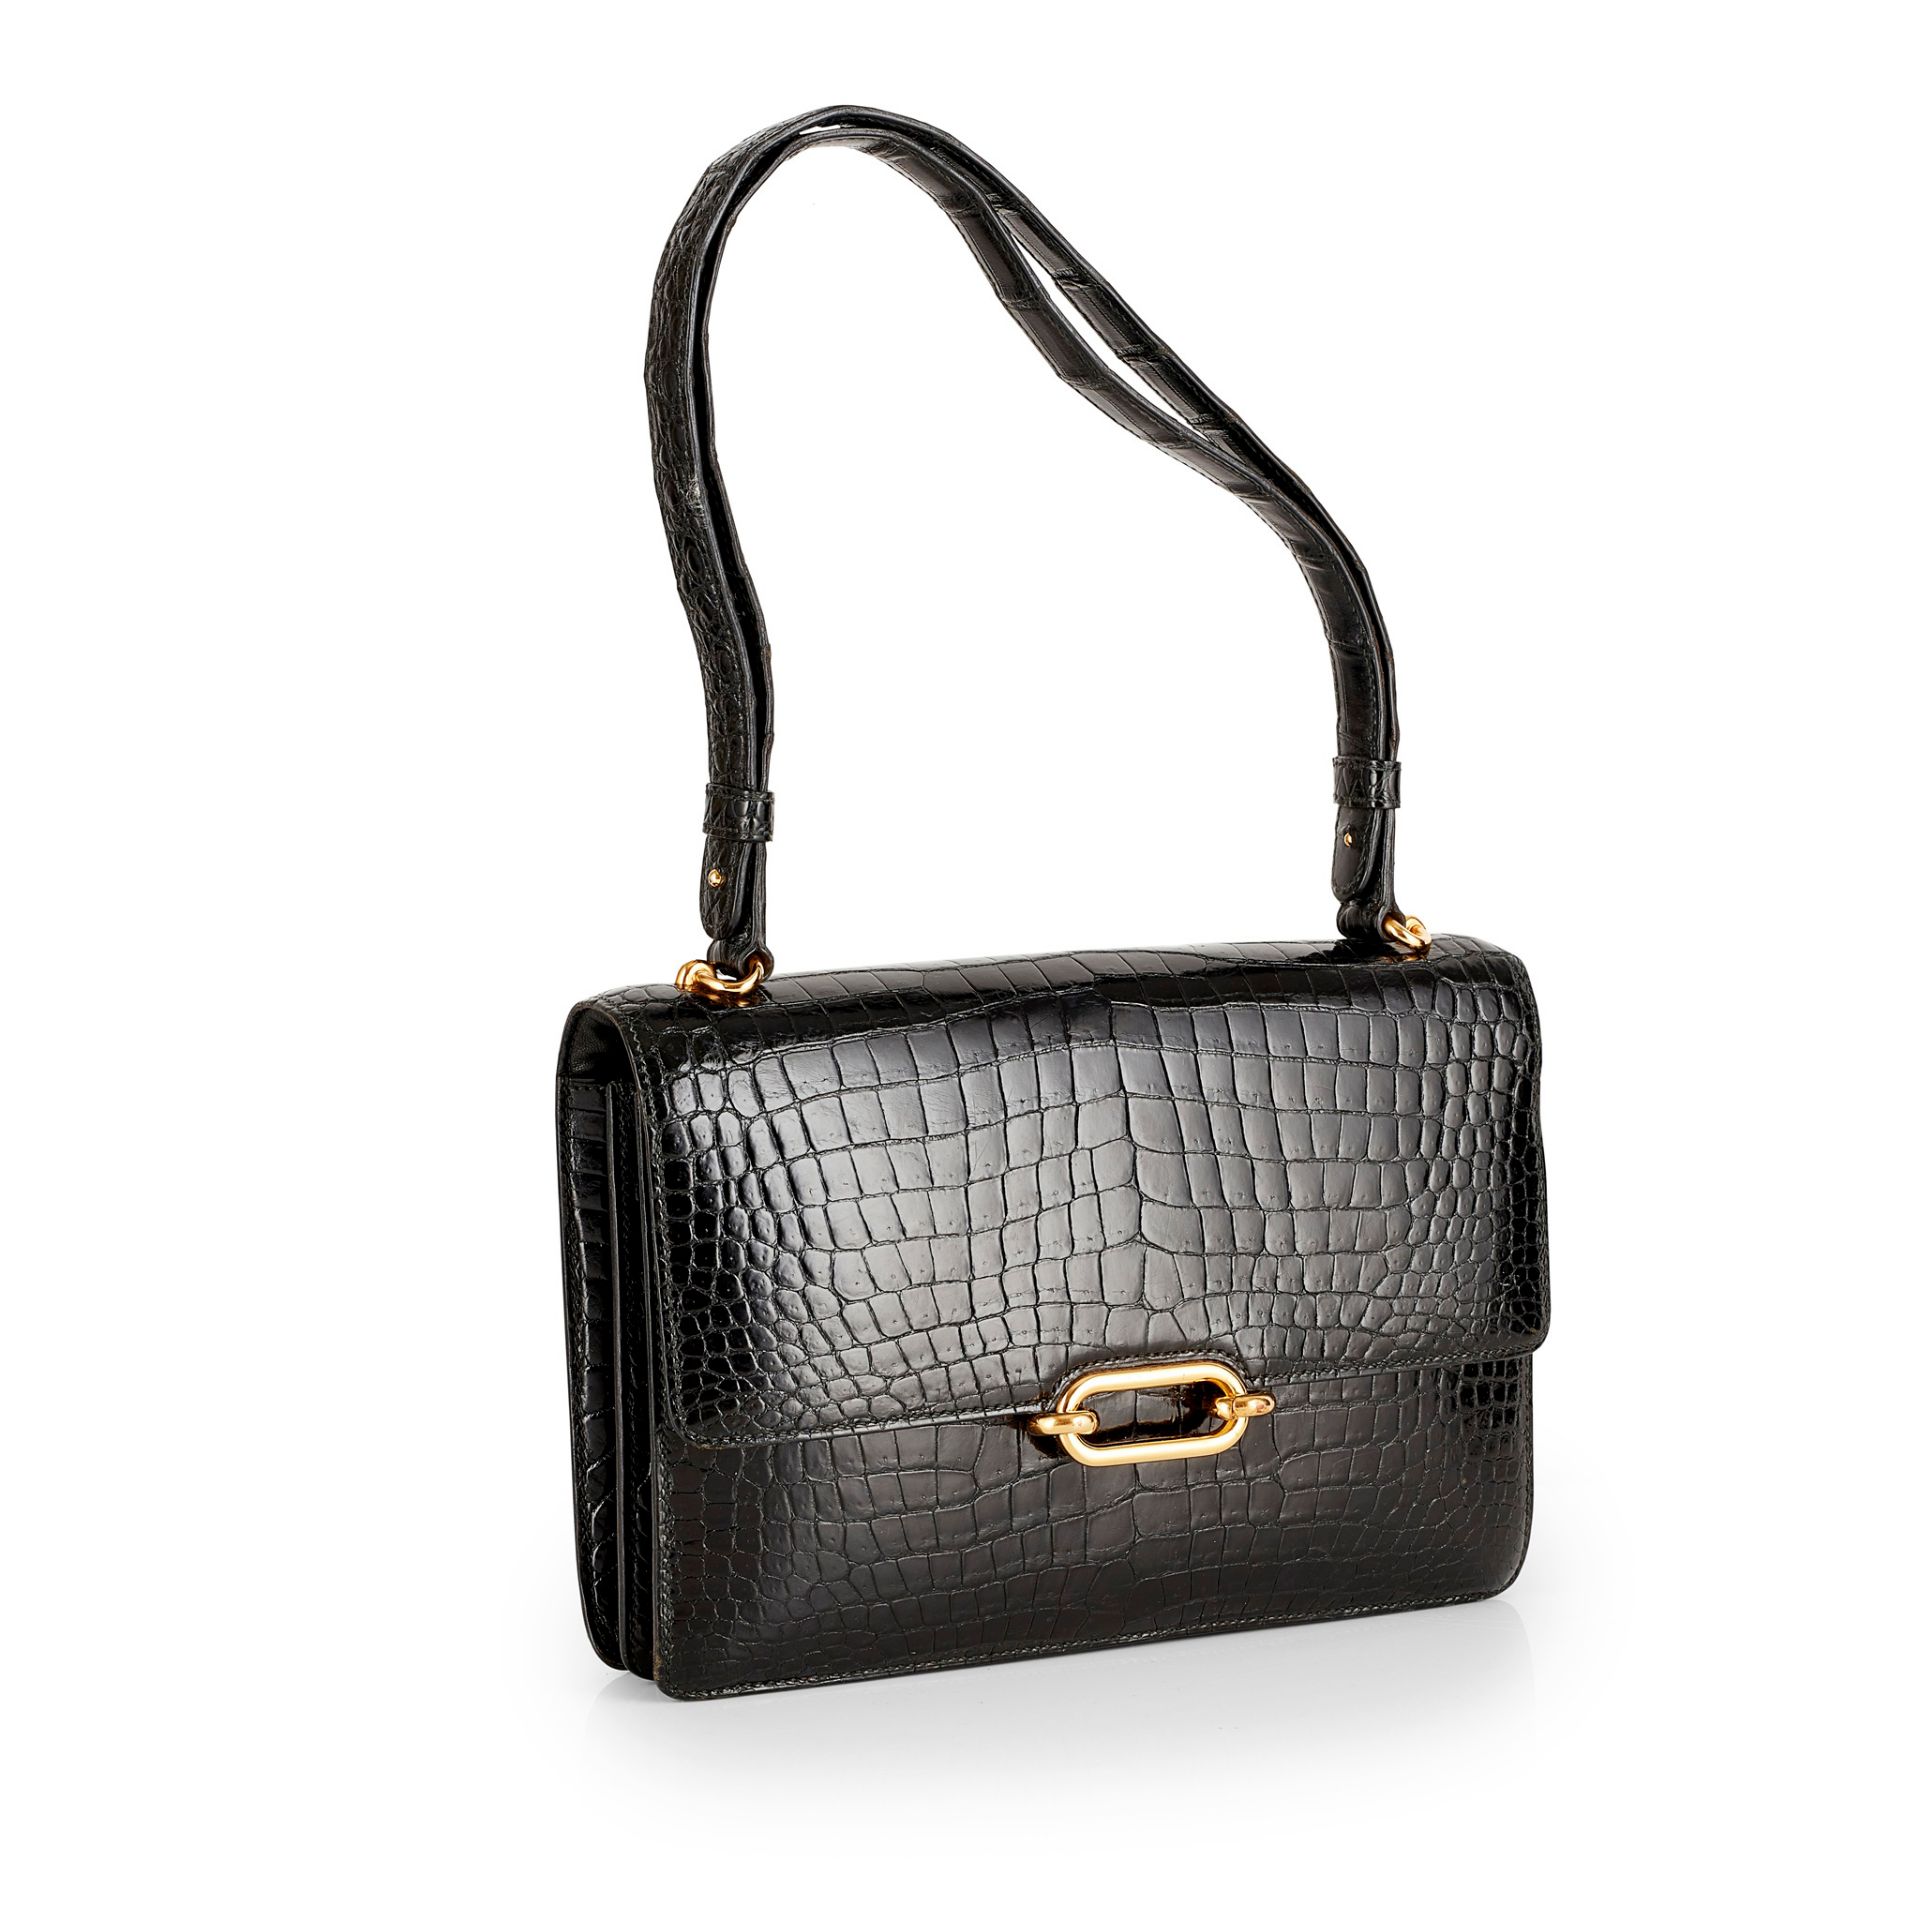 A 'Fonsebelle' shoulder bag, Hermès